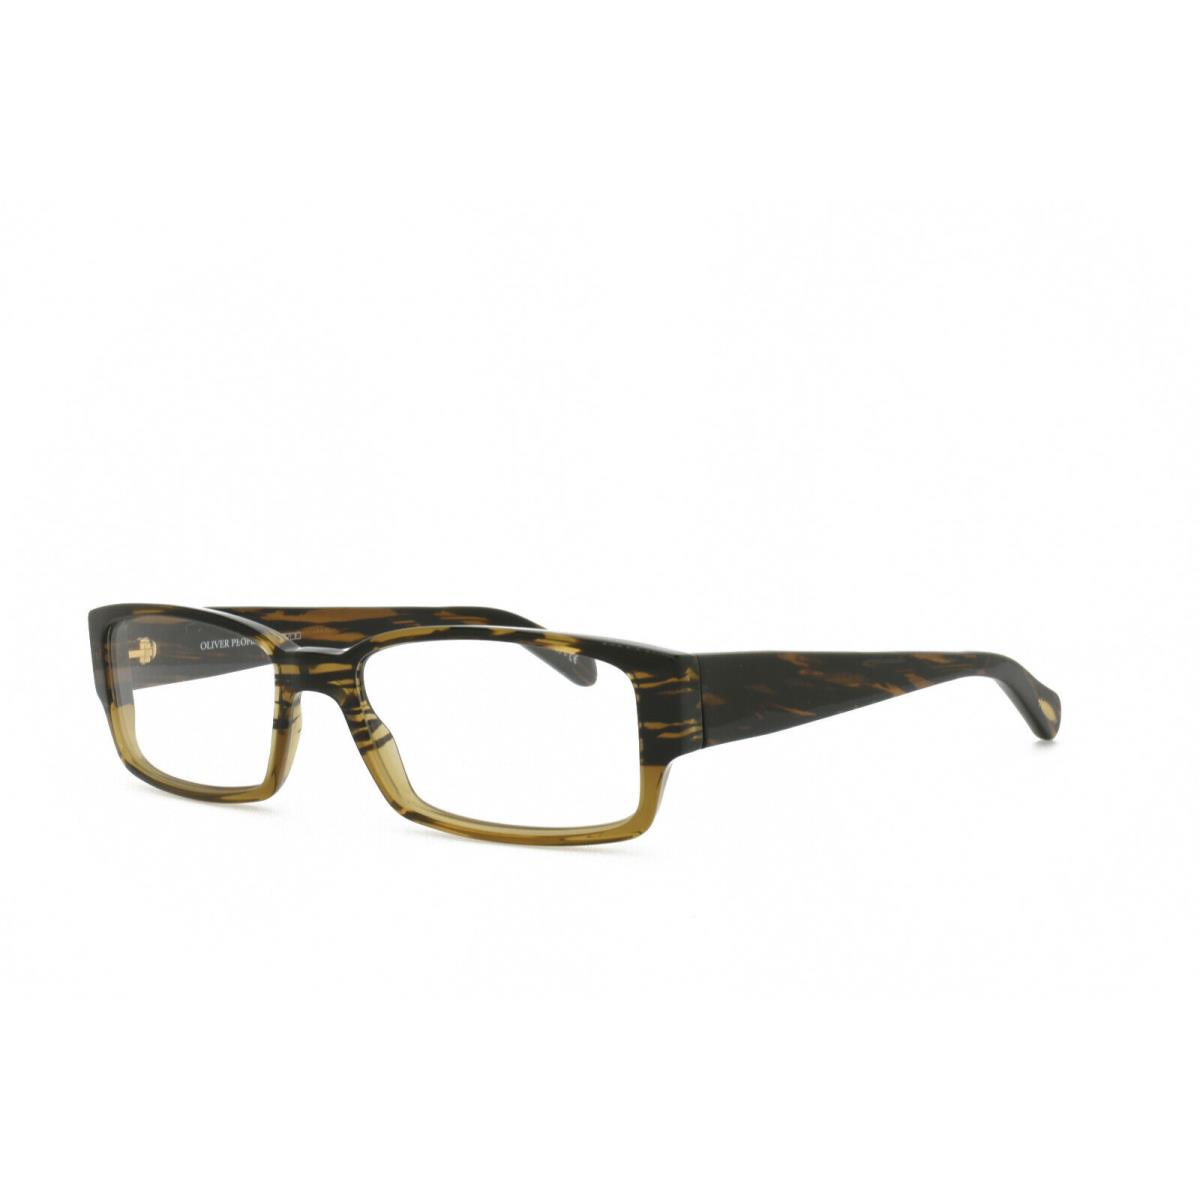 Oliver Peoples Mackaye 5103 1001 Eyeglasses Frames Only 52-16-140